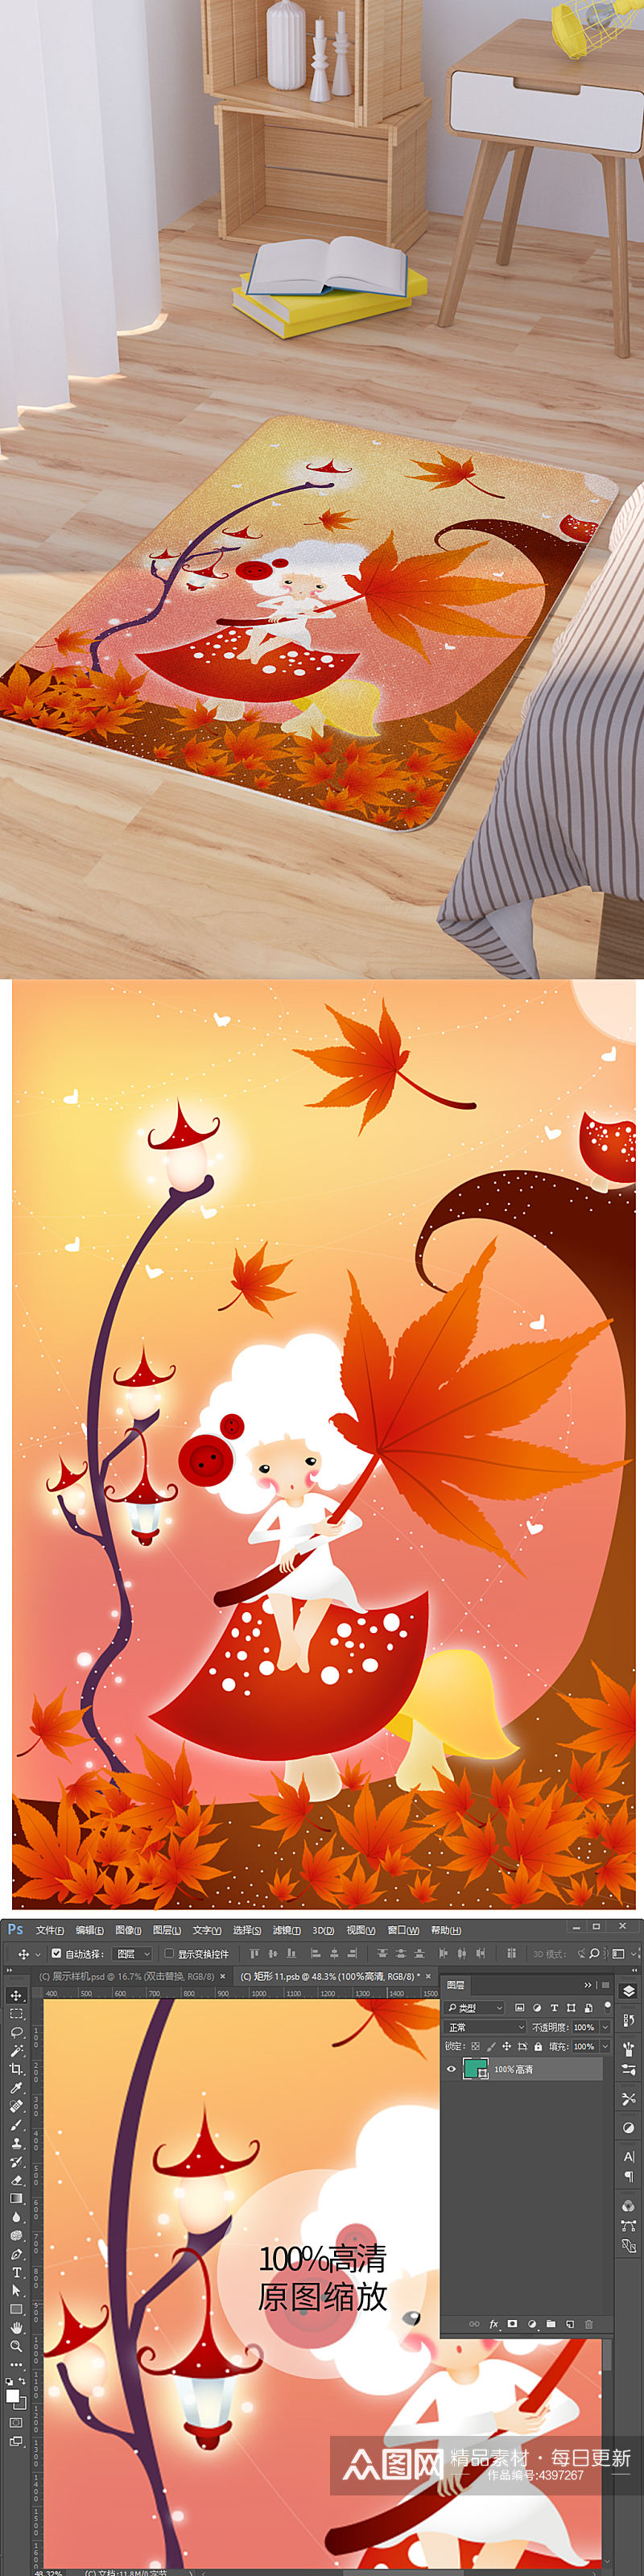 秋天枫叶少女插画矢量卡通地毯图案素材